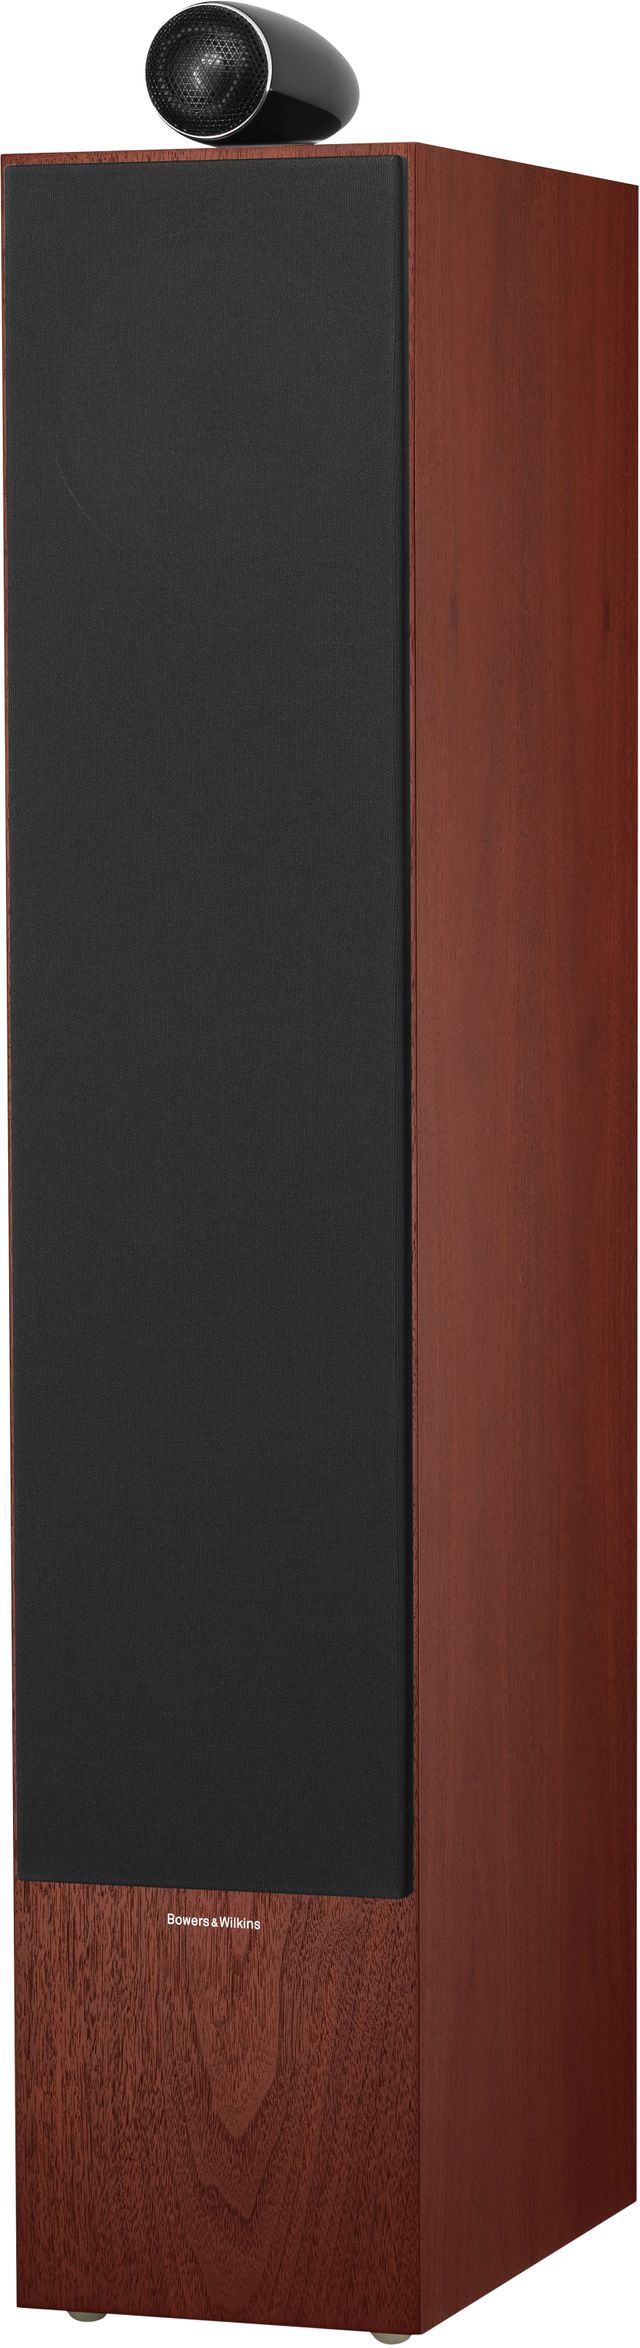 Bowers & Wilkins Gloss Black 702 S2 Floorstanding Speaker 3